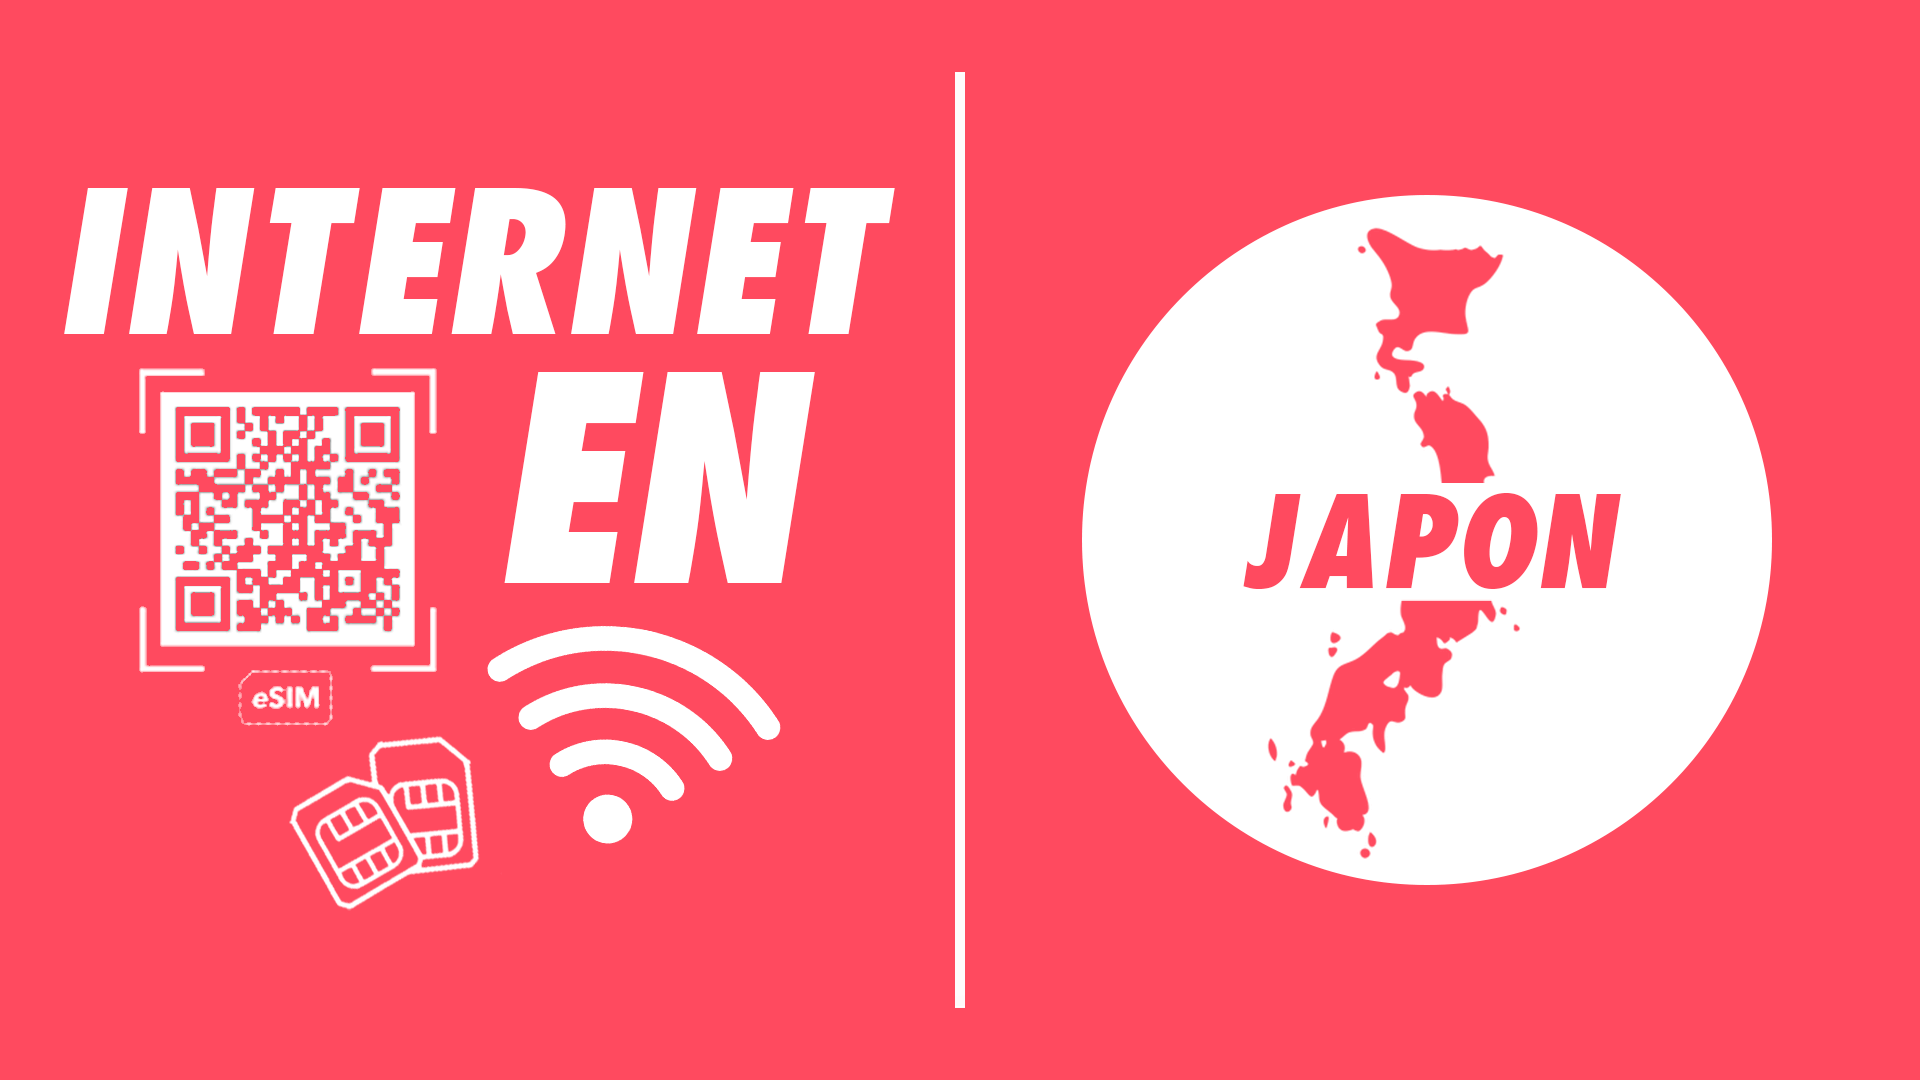 Cómo tener internet en Japón esim